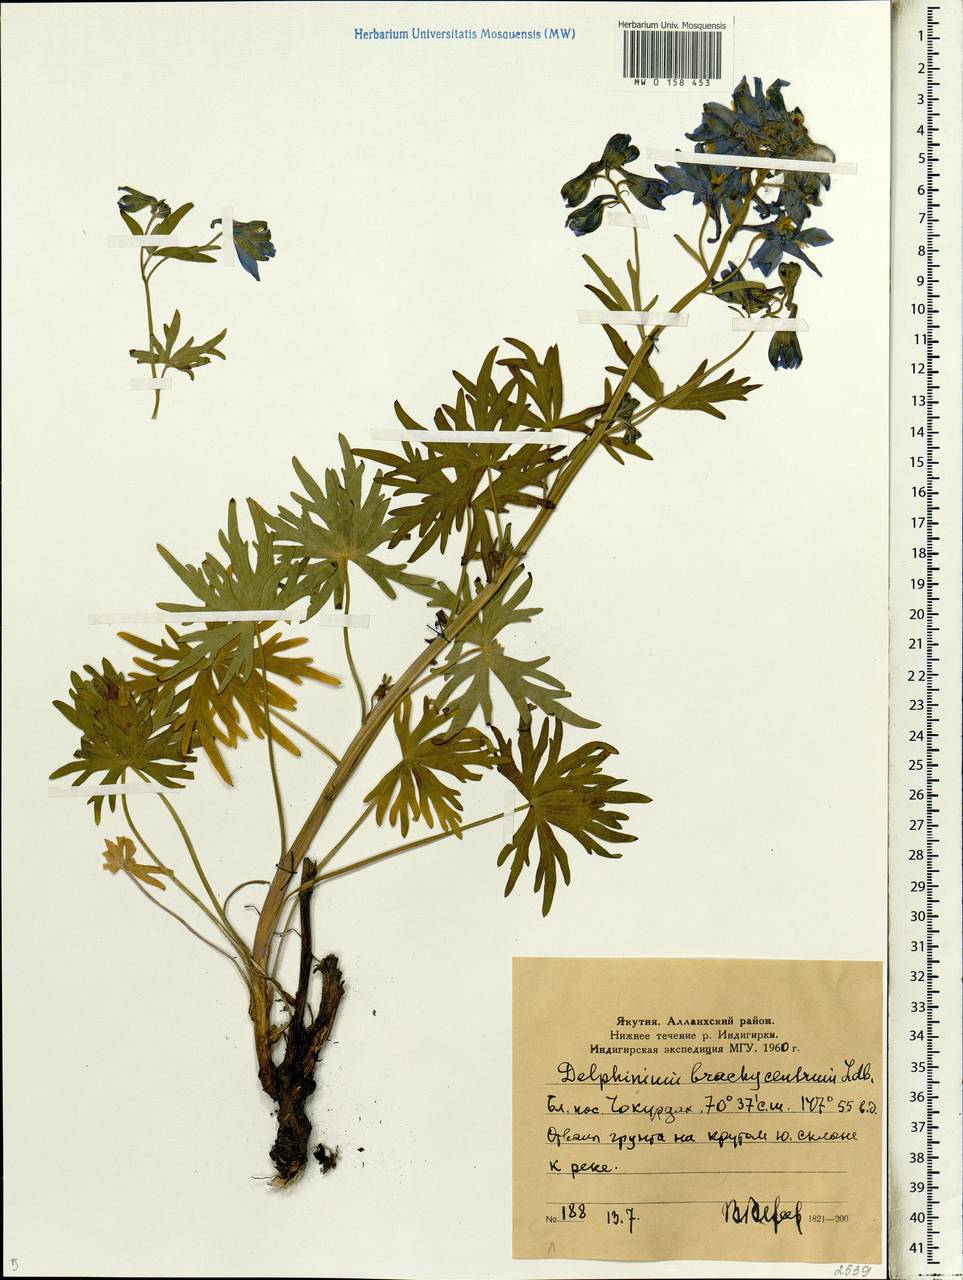 Delphinium brachycentrum Ledeb., Siberia, Yakutia (S5) (Russia)